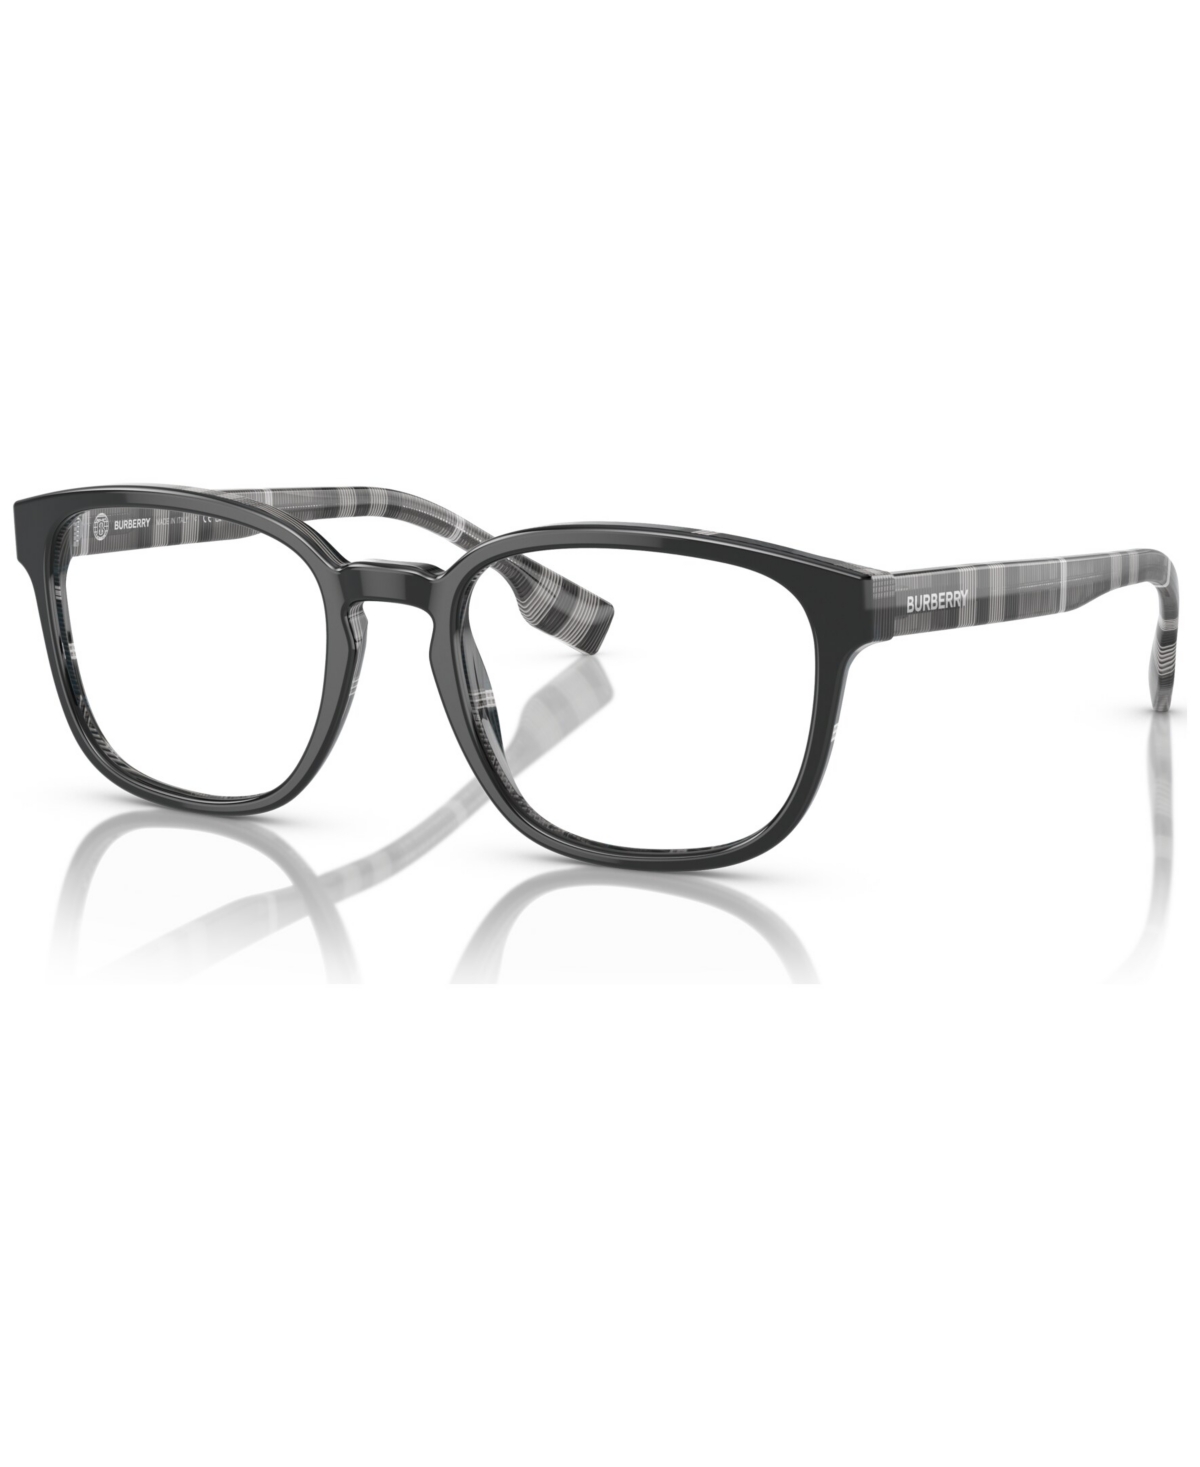 Men's Square Eyeglasses, BE2344 53 - Black